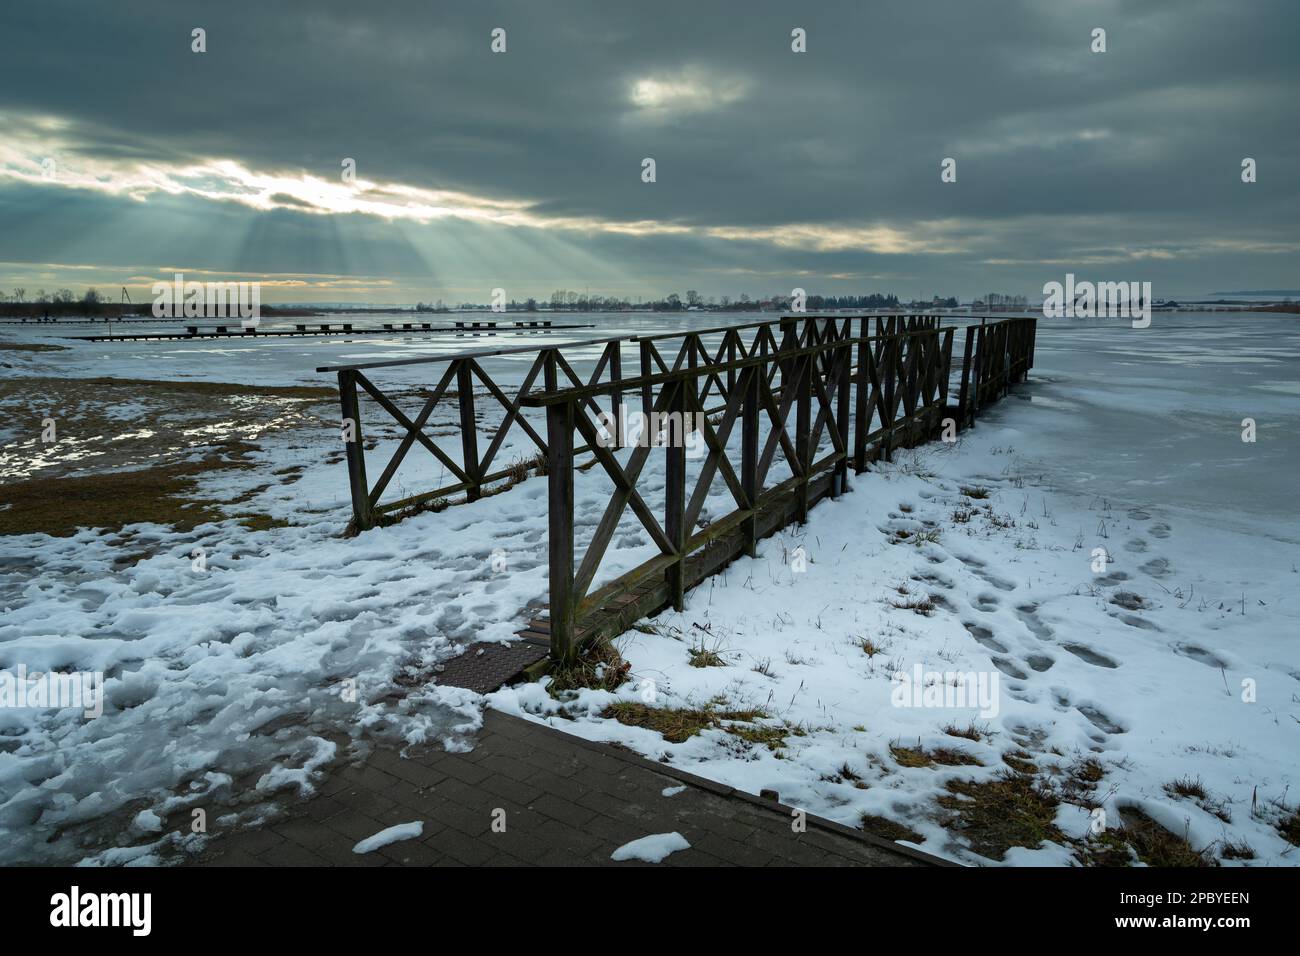 Winterblick auf einen hölzernen Pier und einen gefrorenen See, Sonnenbalken in den Wolken, Zoltance, Polen Stockfoto